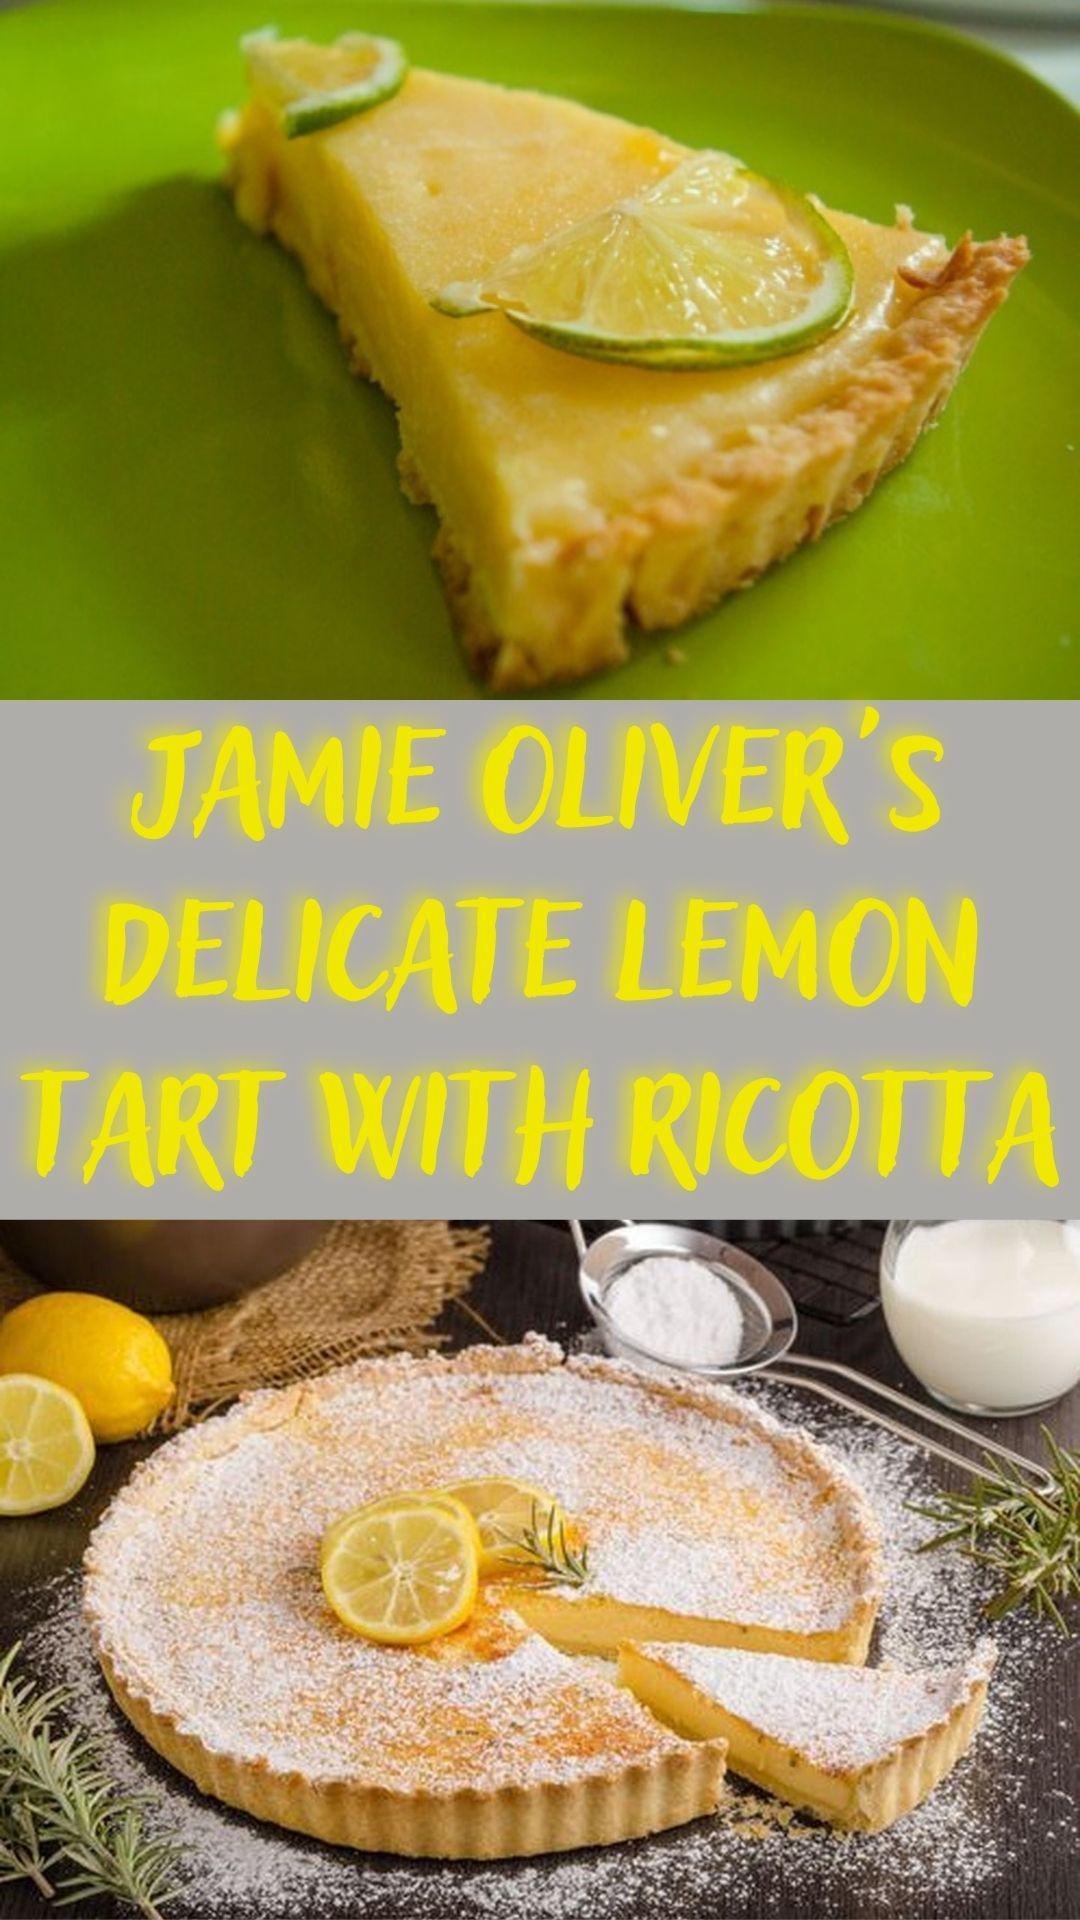 Jamie Oliver's Delicate Lemon Tart with Ricotta